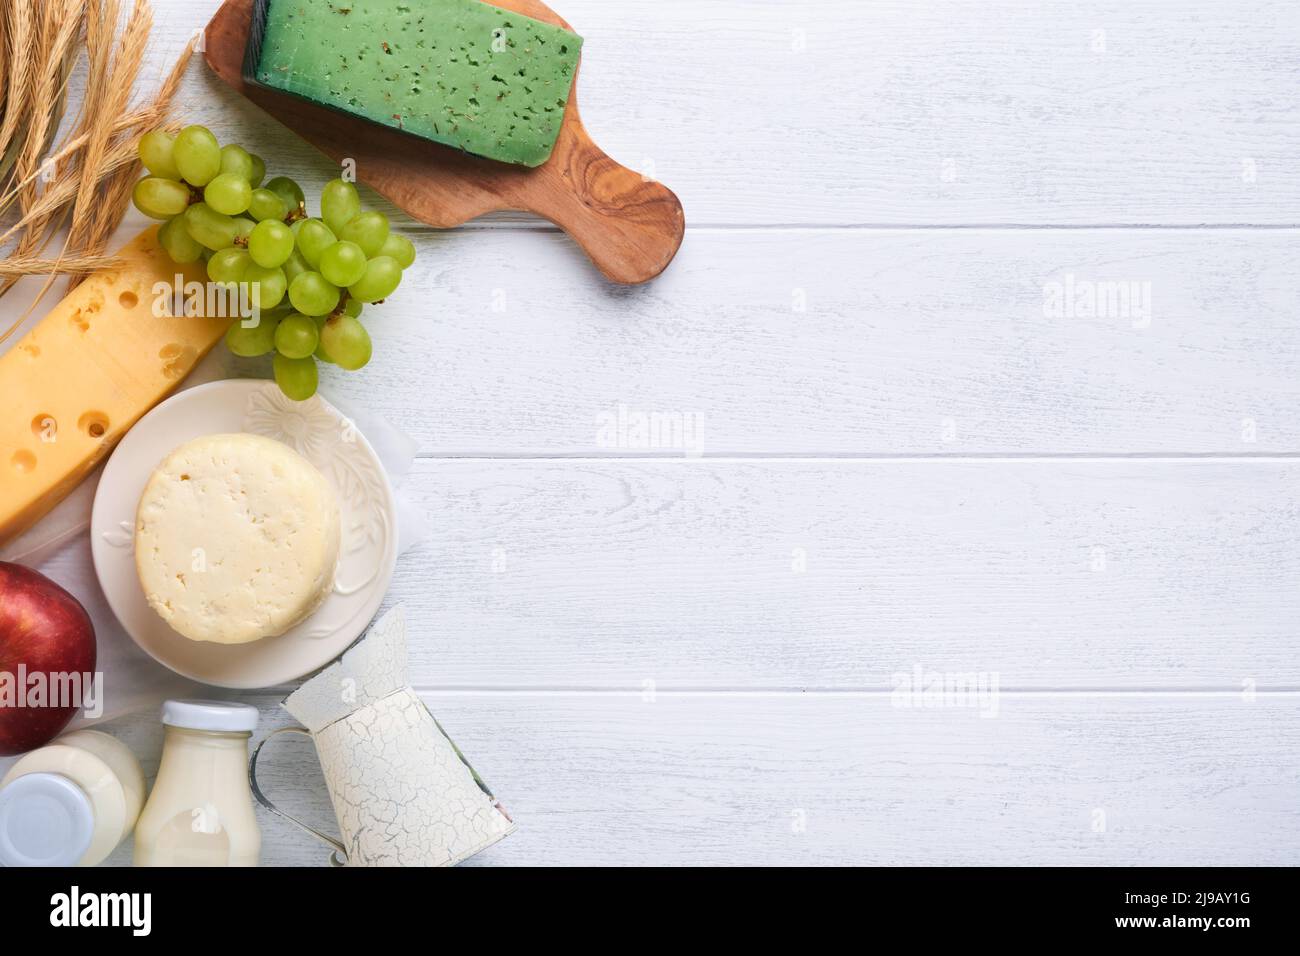 Fête juive de Shavuot. Lait et fromage, blé mûr et fruits, crème. Produits laitiers sur fond de bois blanc. Concept Shavuot. Haut v Banque D'Images